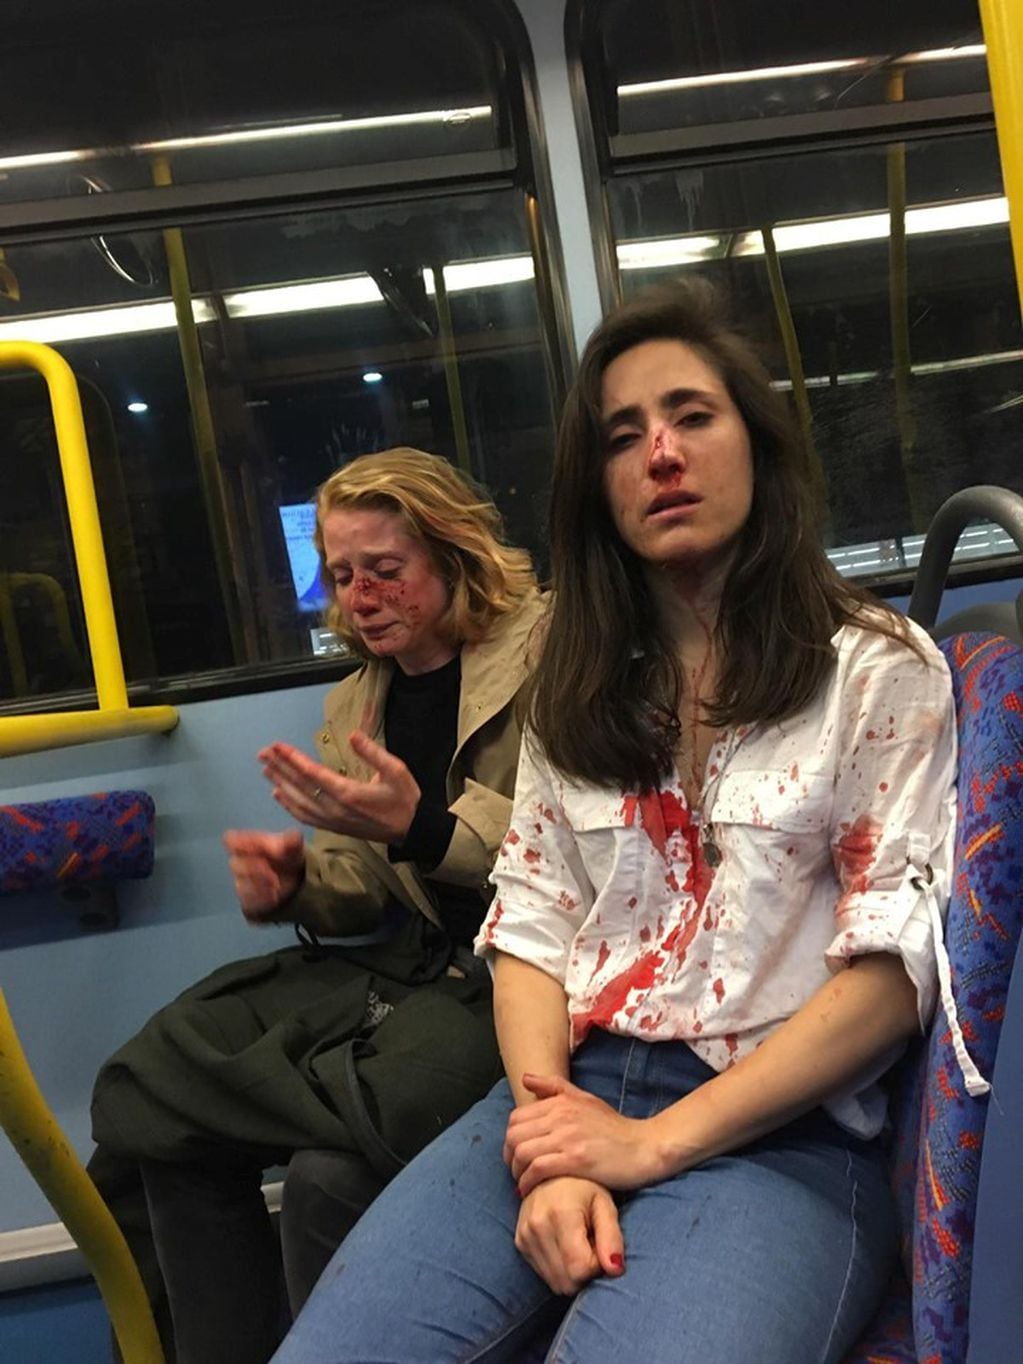 Un grupo de homofóbicos golpeó brutalmente a una pareja de mujeres en Londres (Foto: Facebook)